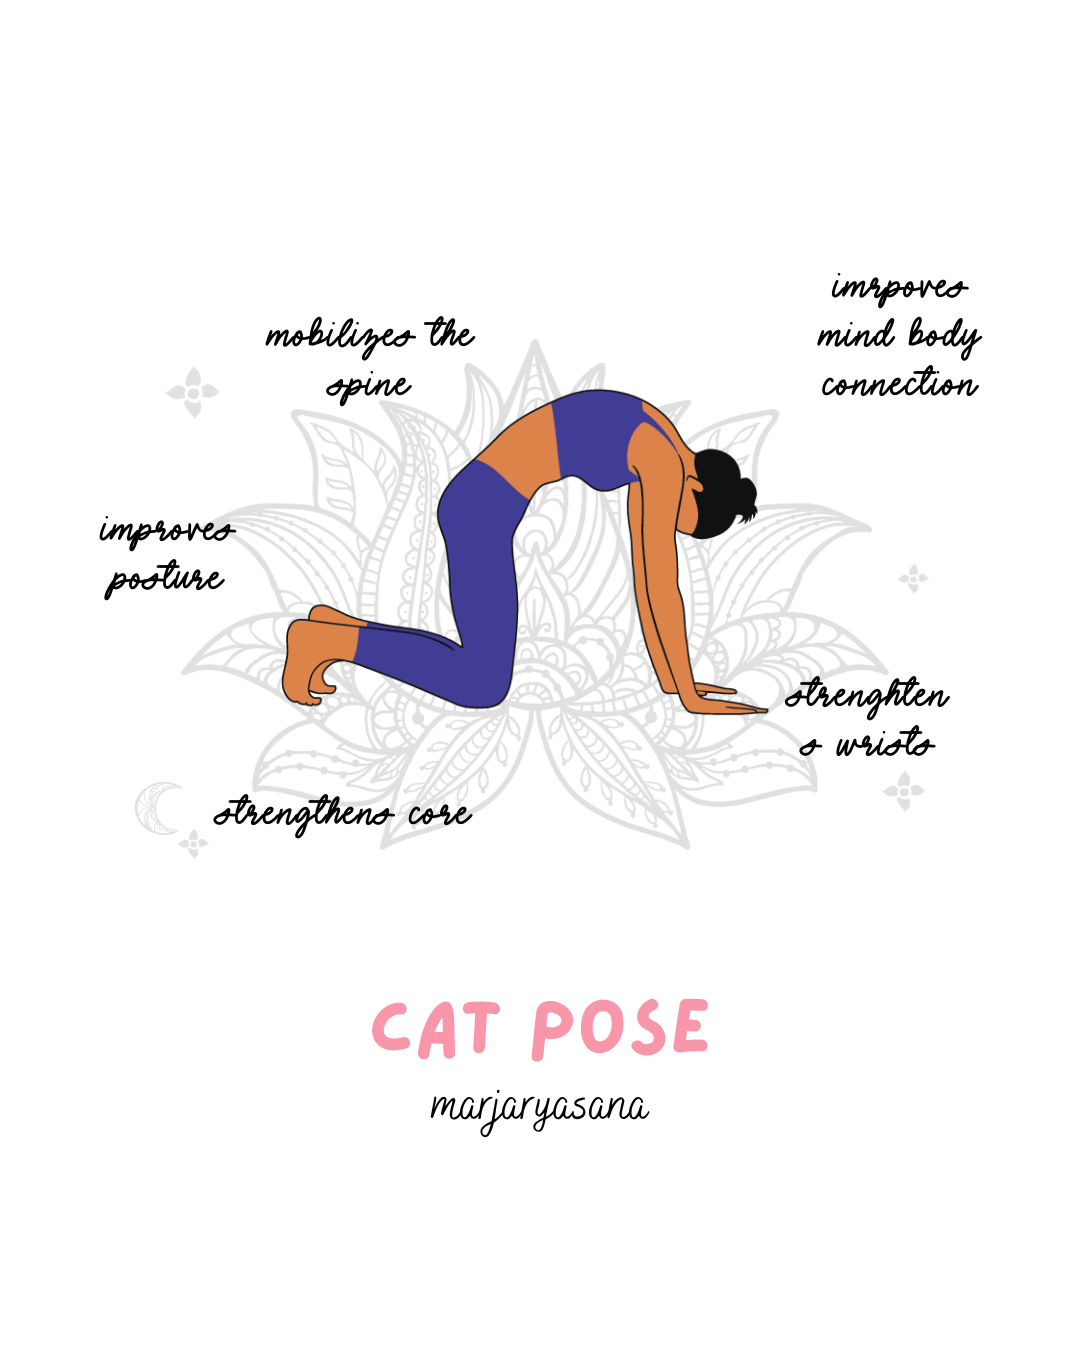 Cat pose yoga